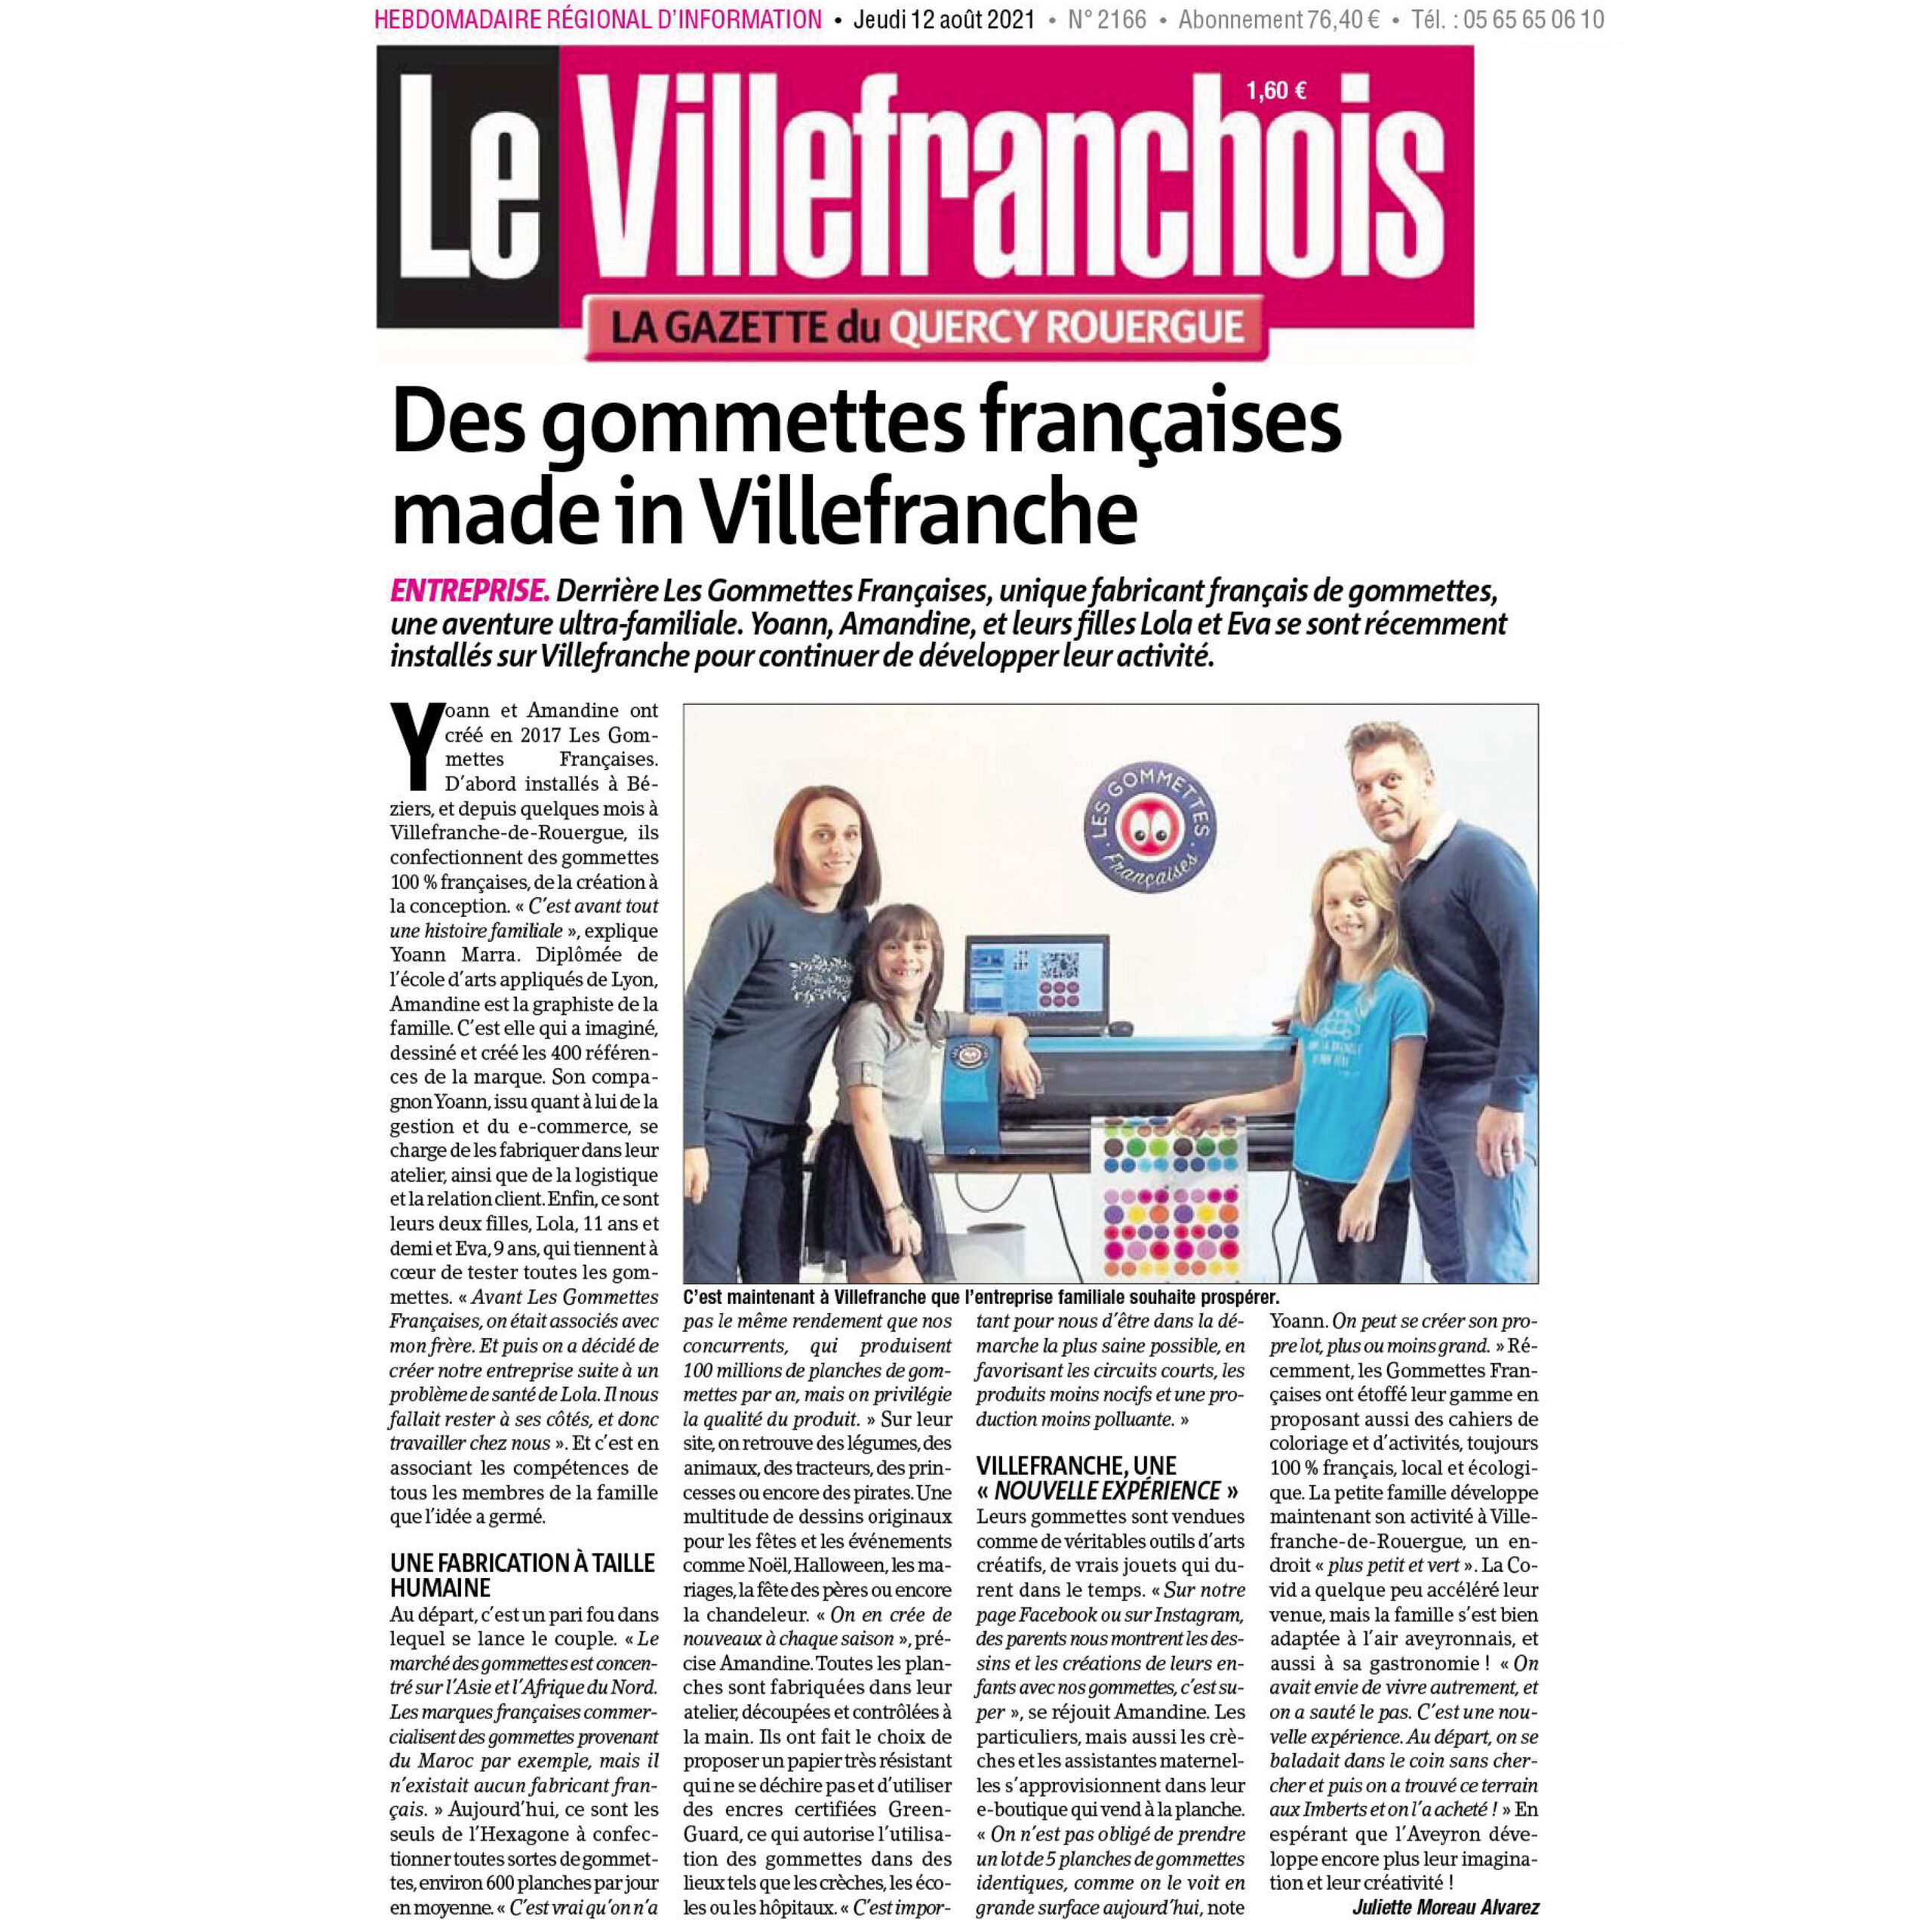 La presse en parle | Les gommettes françaises | Le Villefranchois